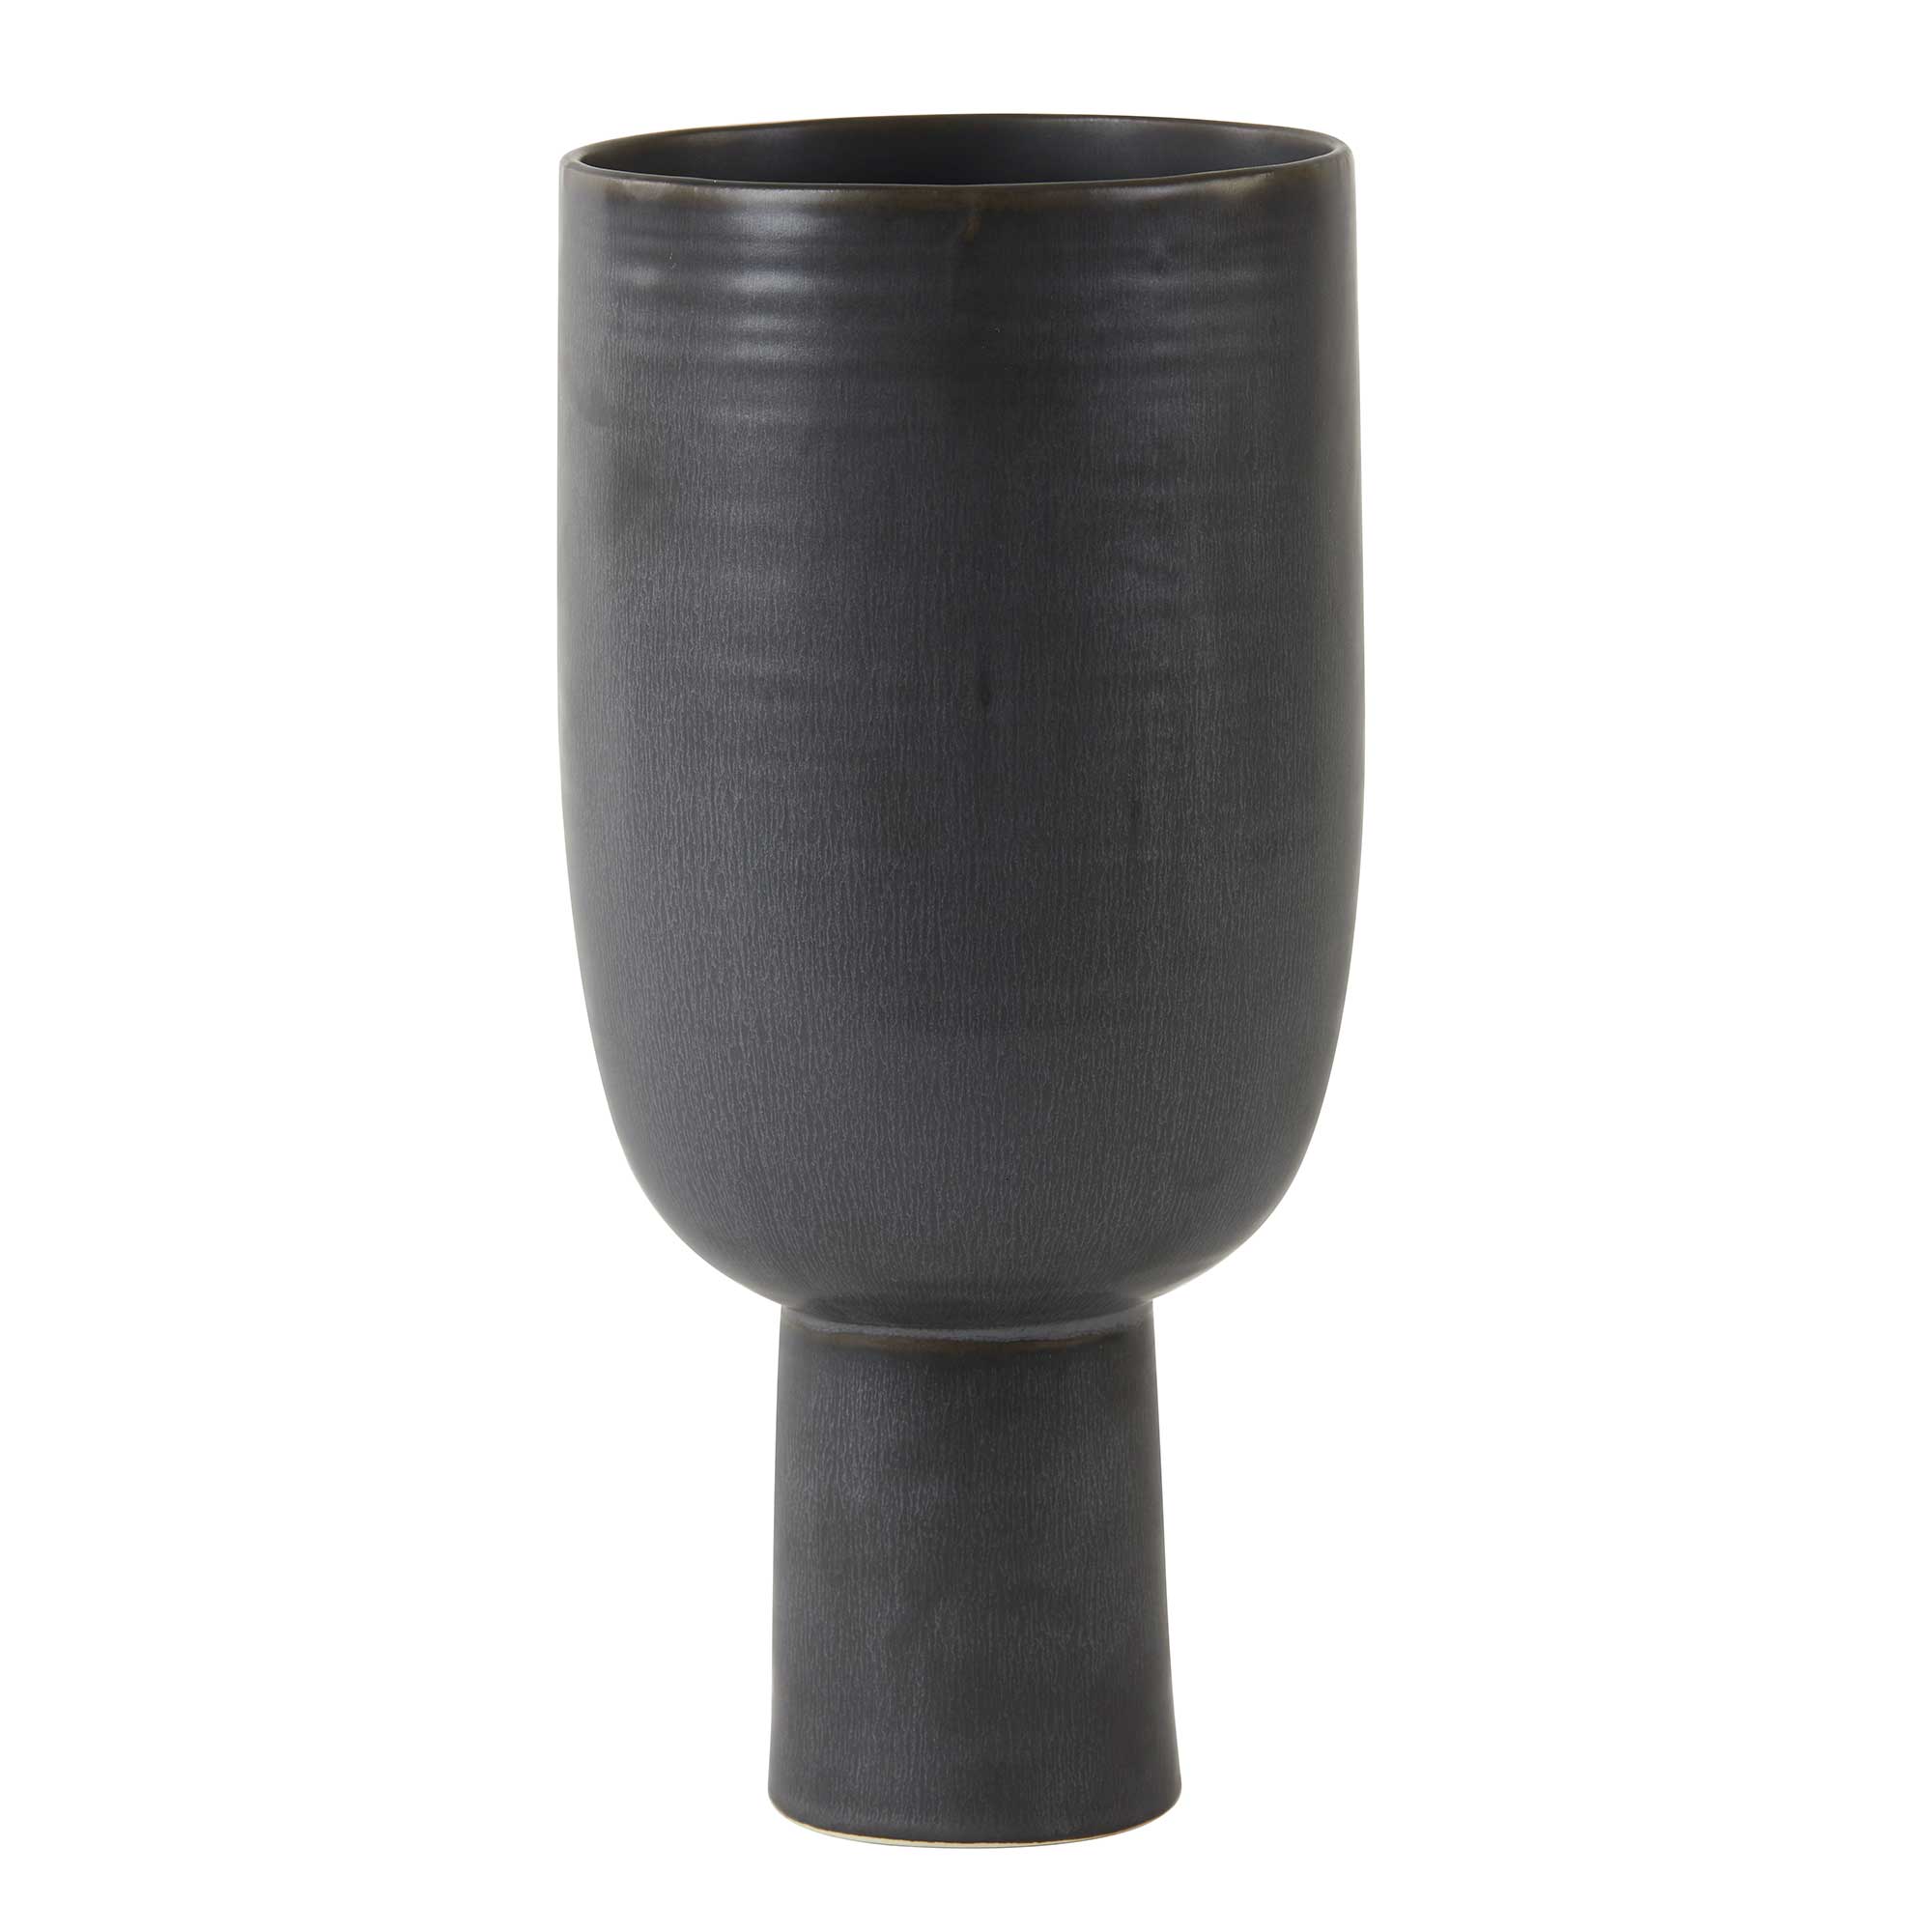 Tall Stem Vase, Black Ceramic | Barker & Stonehouse